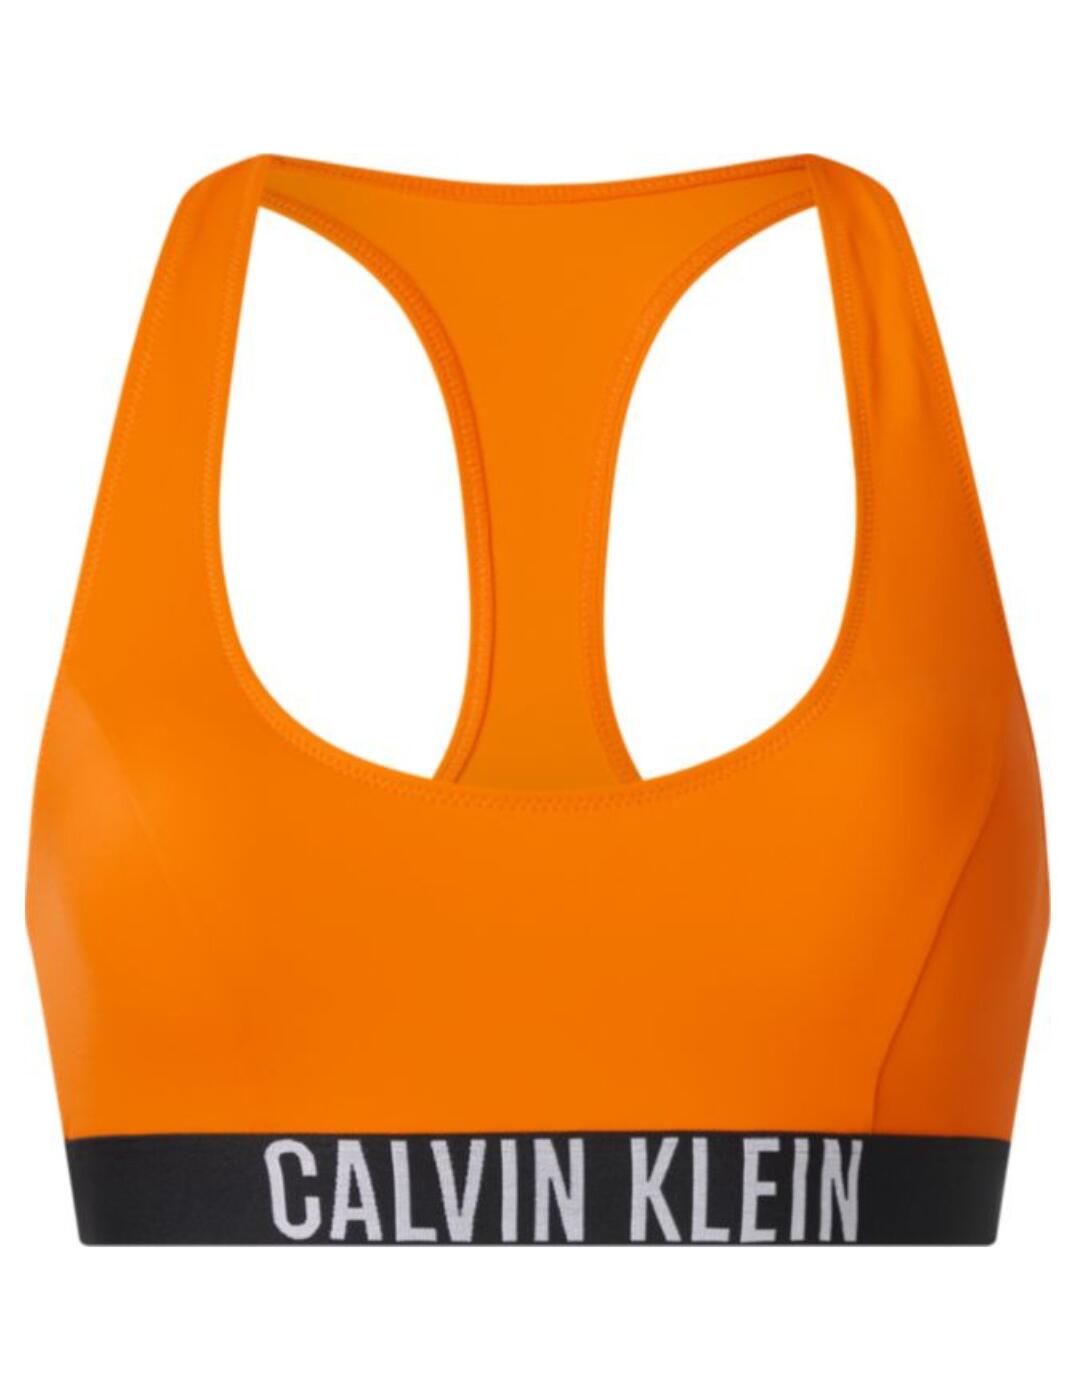 Calvin Klein Intense Power Bralette Bikini Top - Belle Lingerie